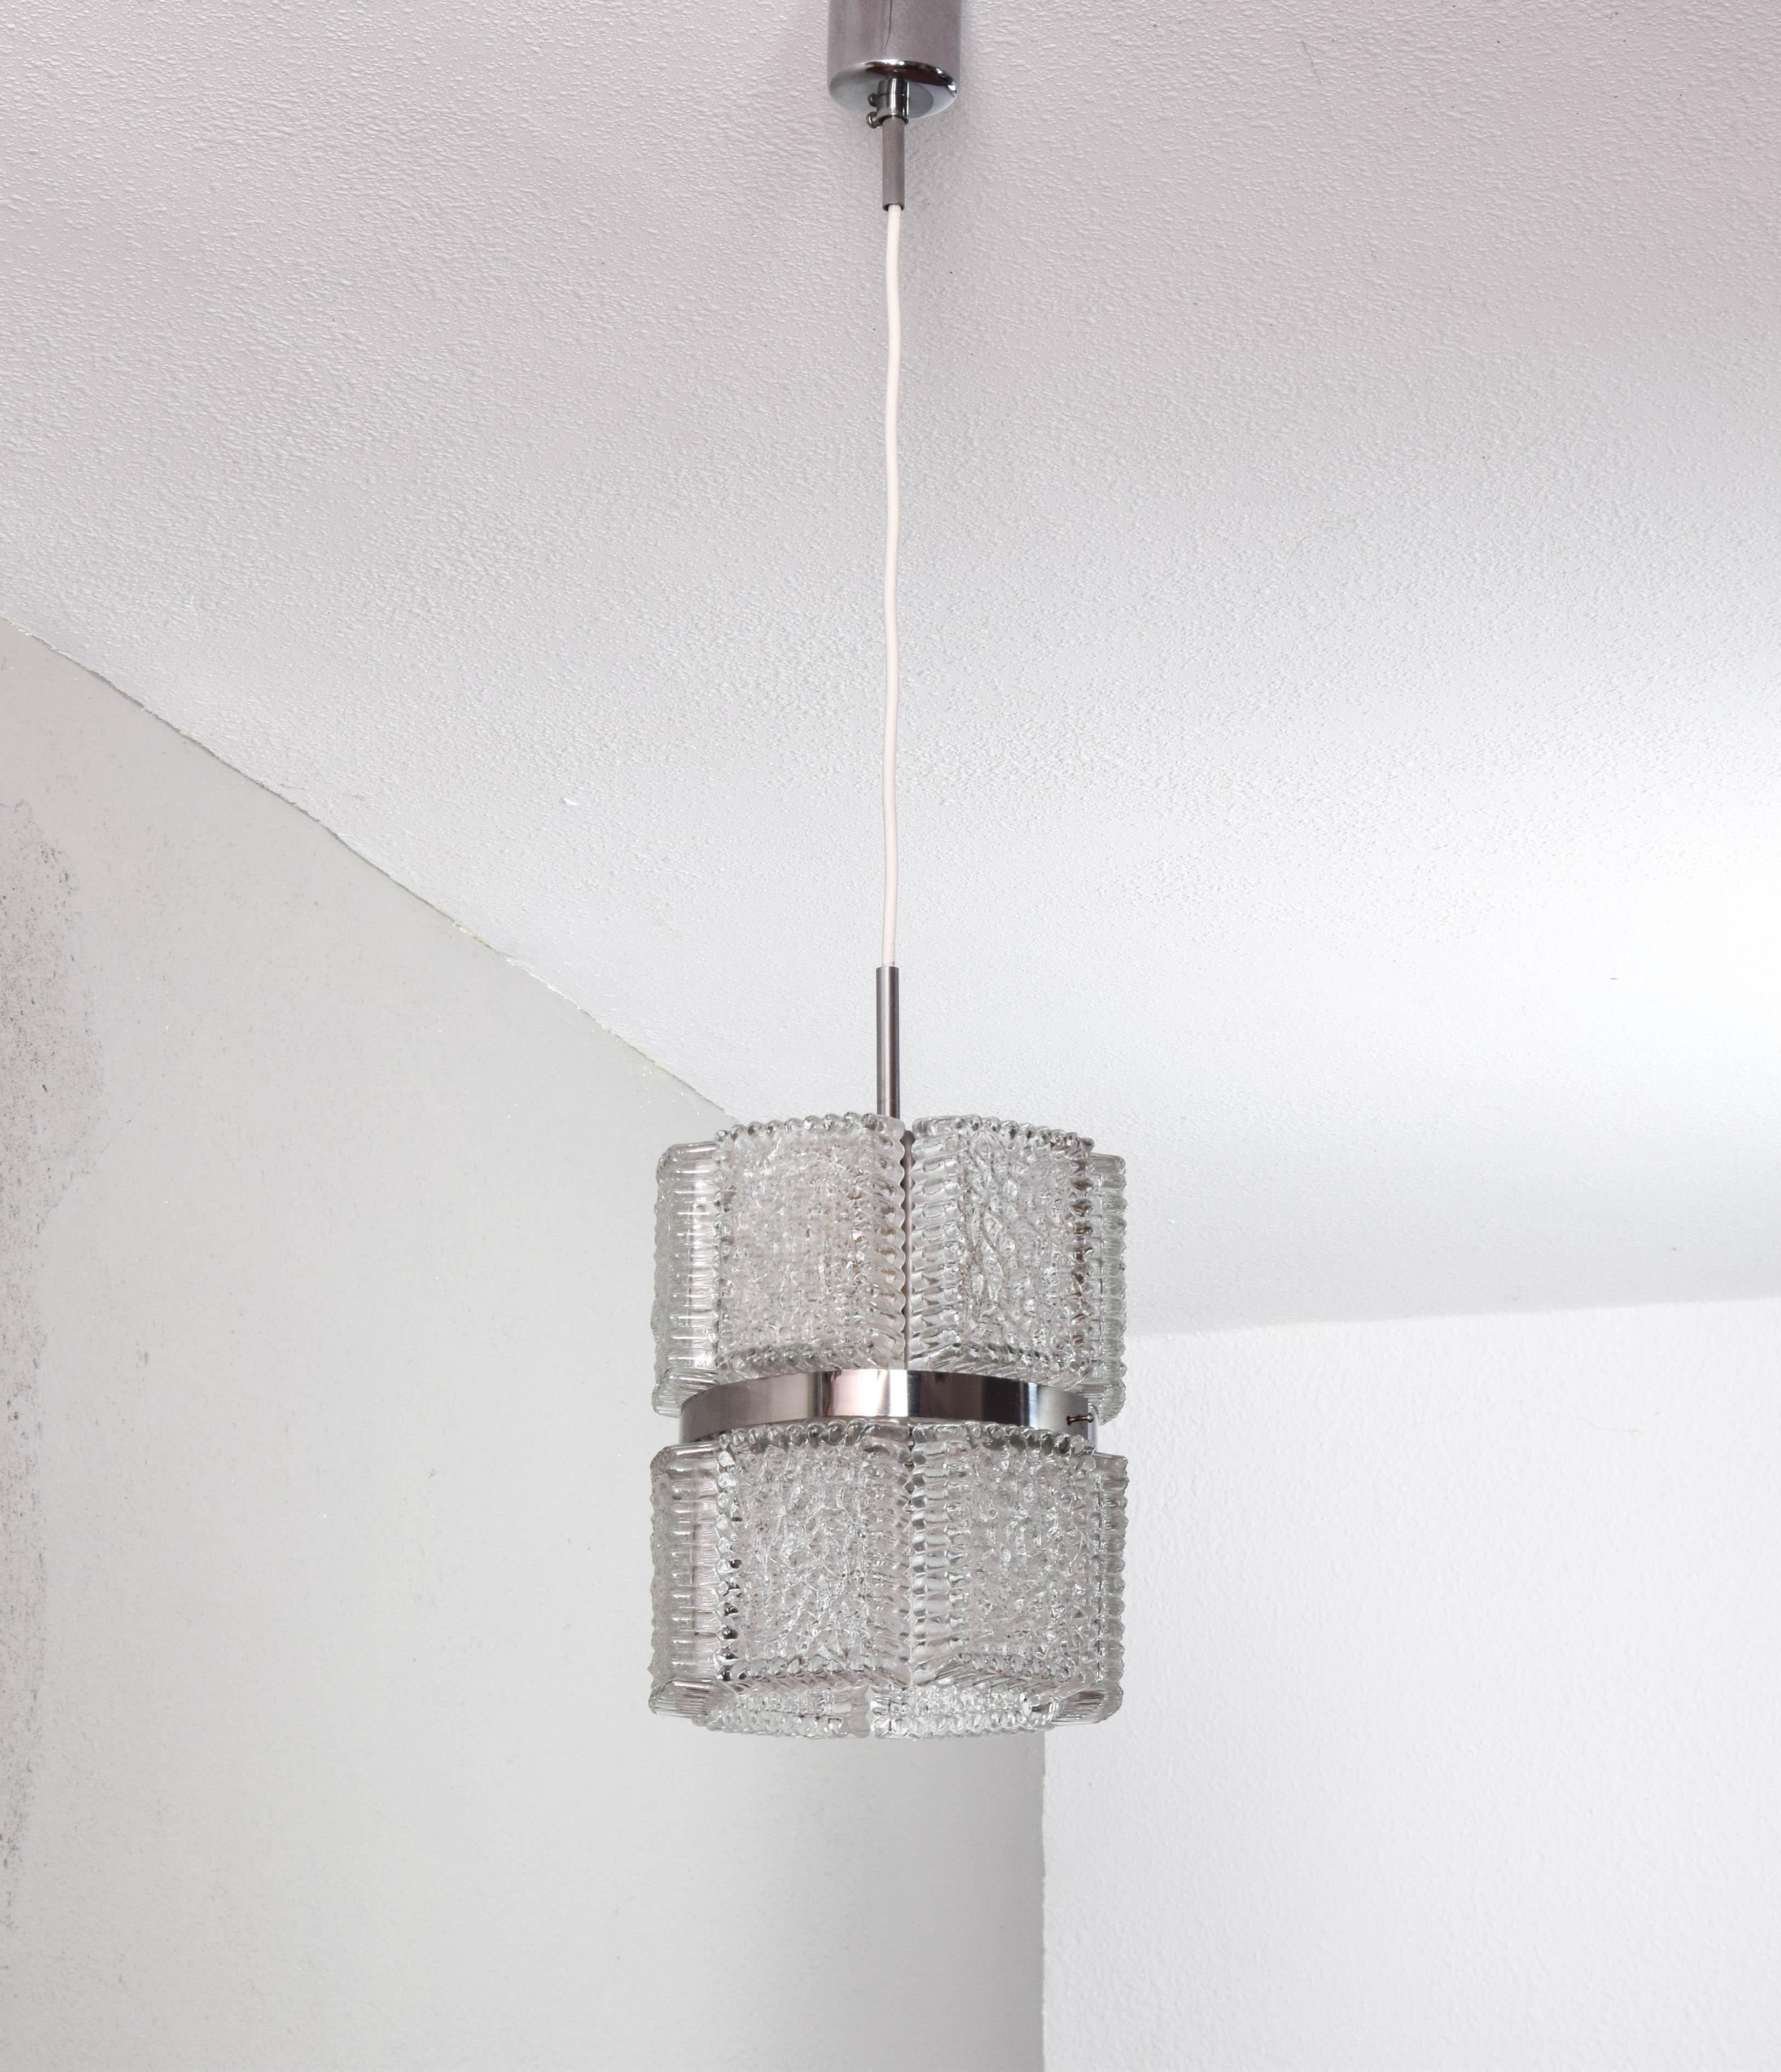 Mid Century Modern chandelier realizada por Kaiser Leuchten, Alemania en la decada de los 60.
Cuerpo de la ceiling lamp compuesto por 12 bloques de crystal macizo texturizado que se distribuyeben 6 en la parte superoir de la lámpara y 6 en la parte